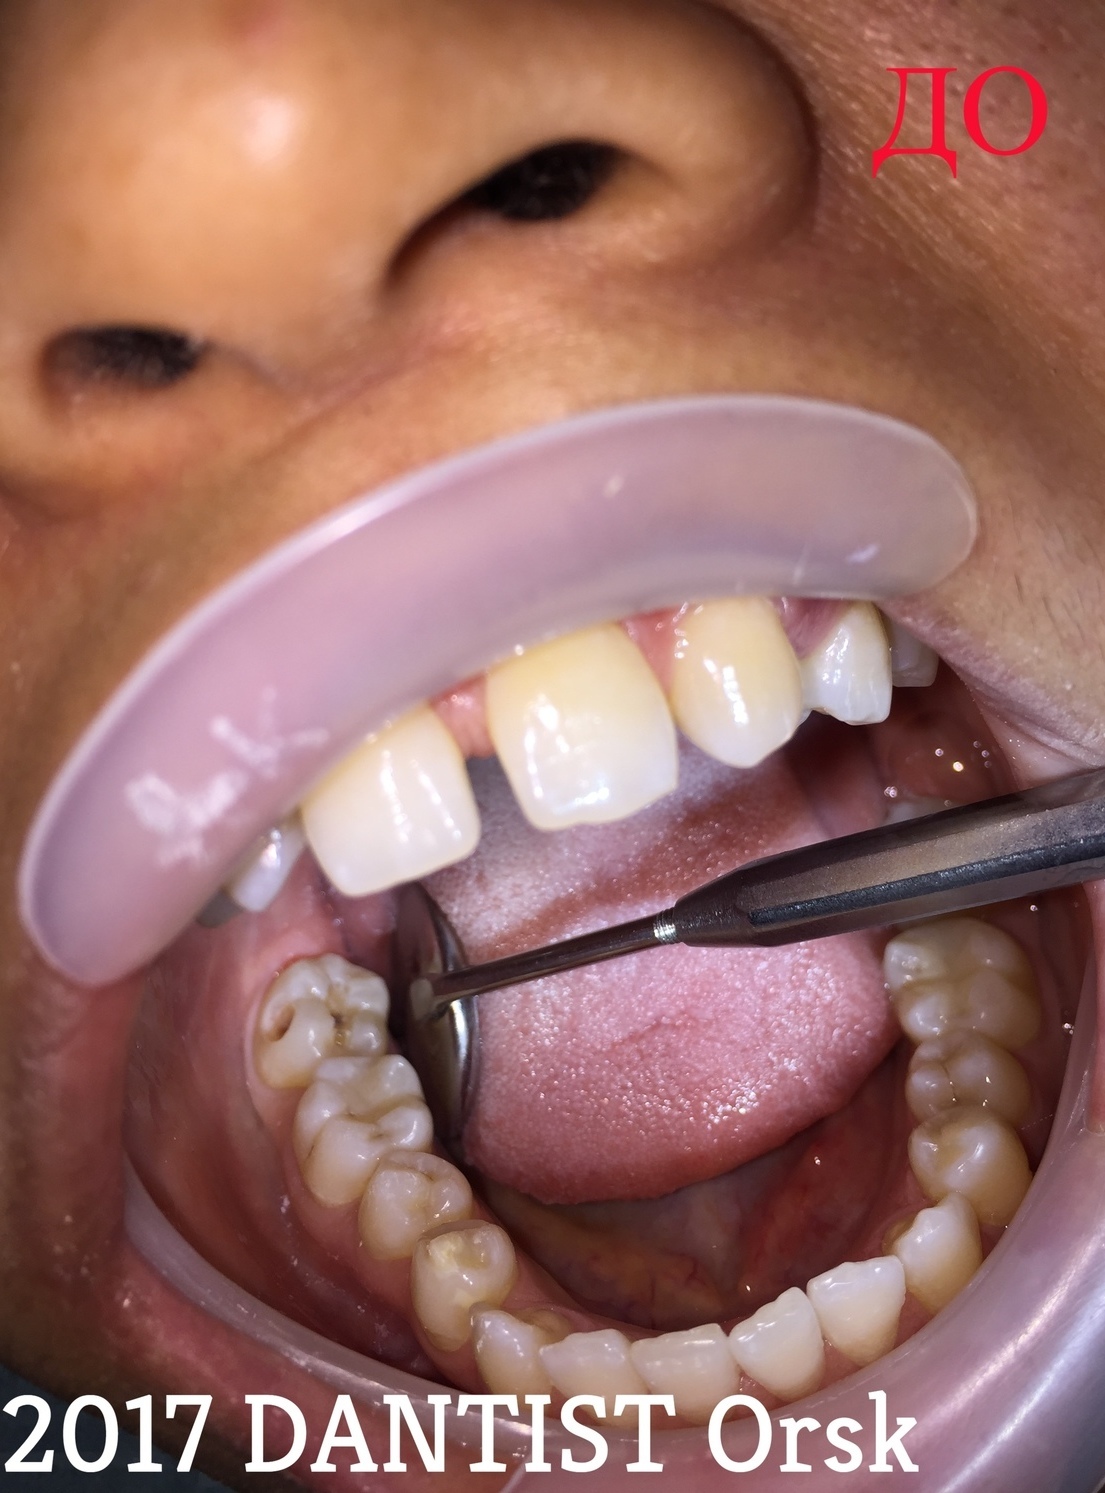 Отсутствие зубов приводит к старости и нарушениям в организме